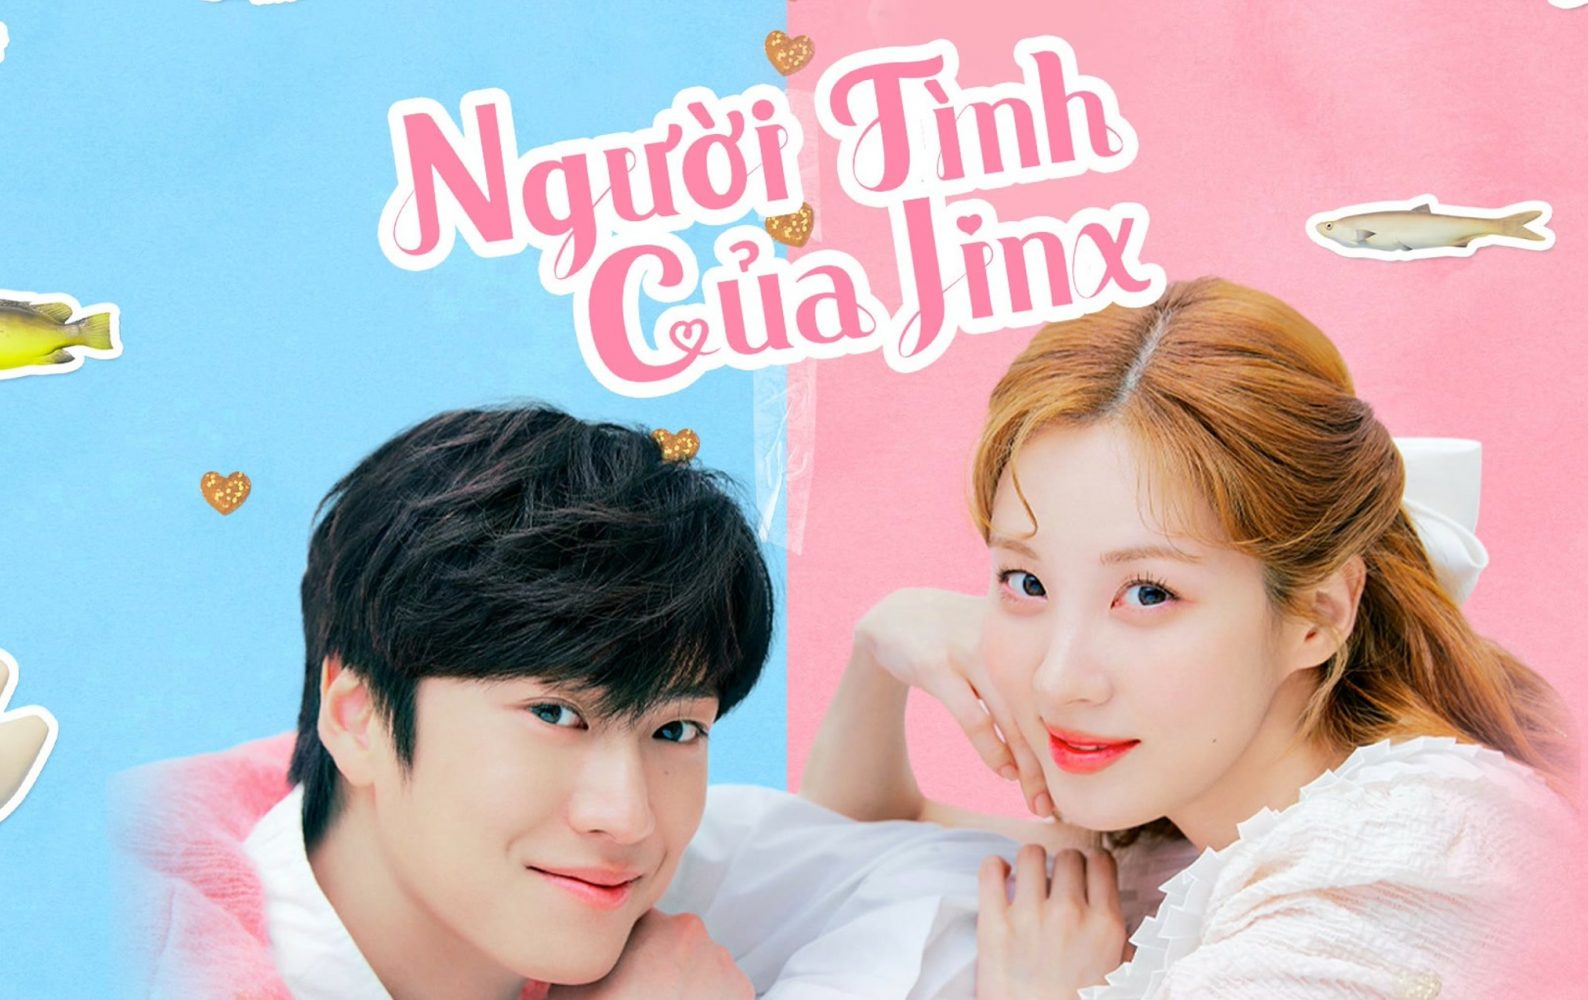 Phim mới của Na In Woo: Người tình của Jinx - Jinxed At First (2022)